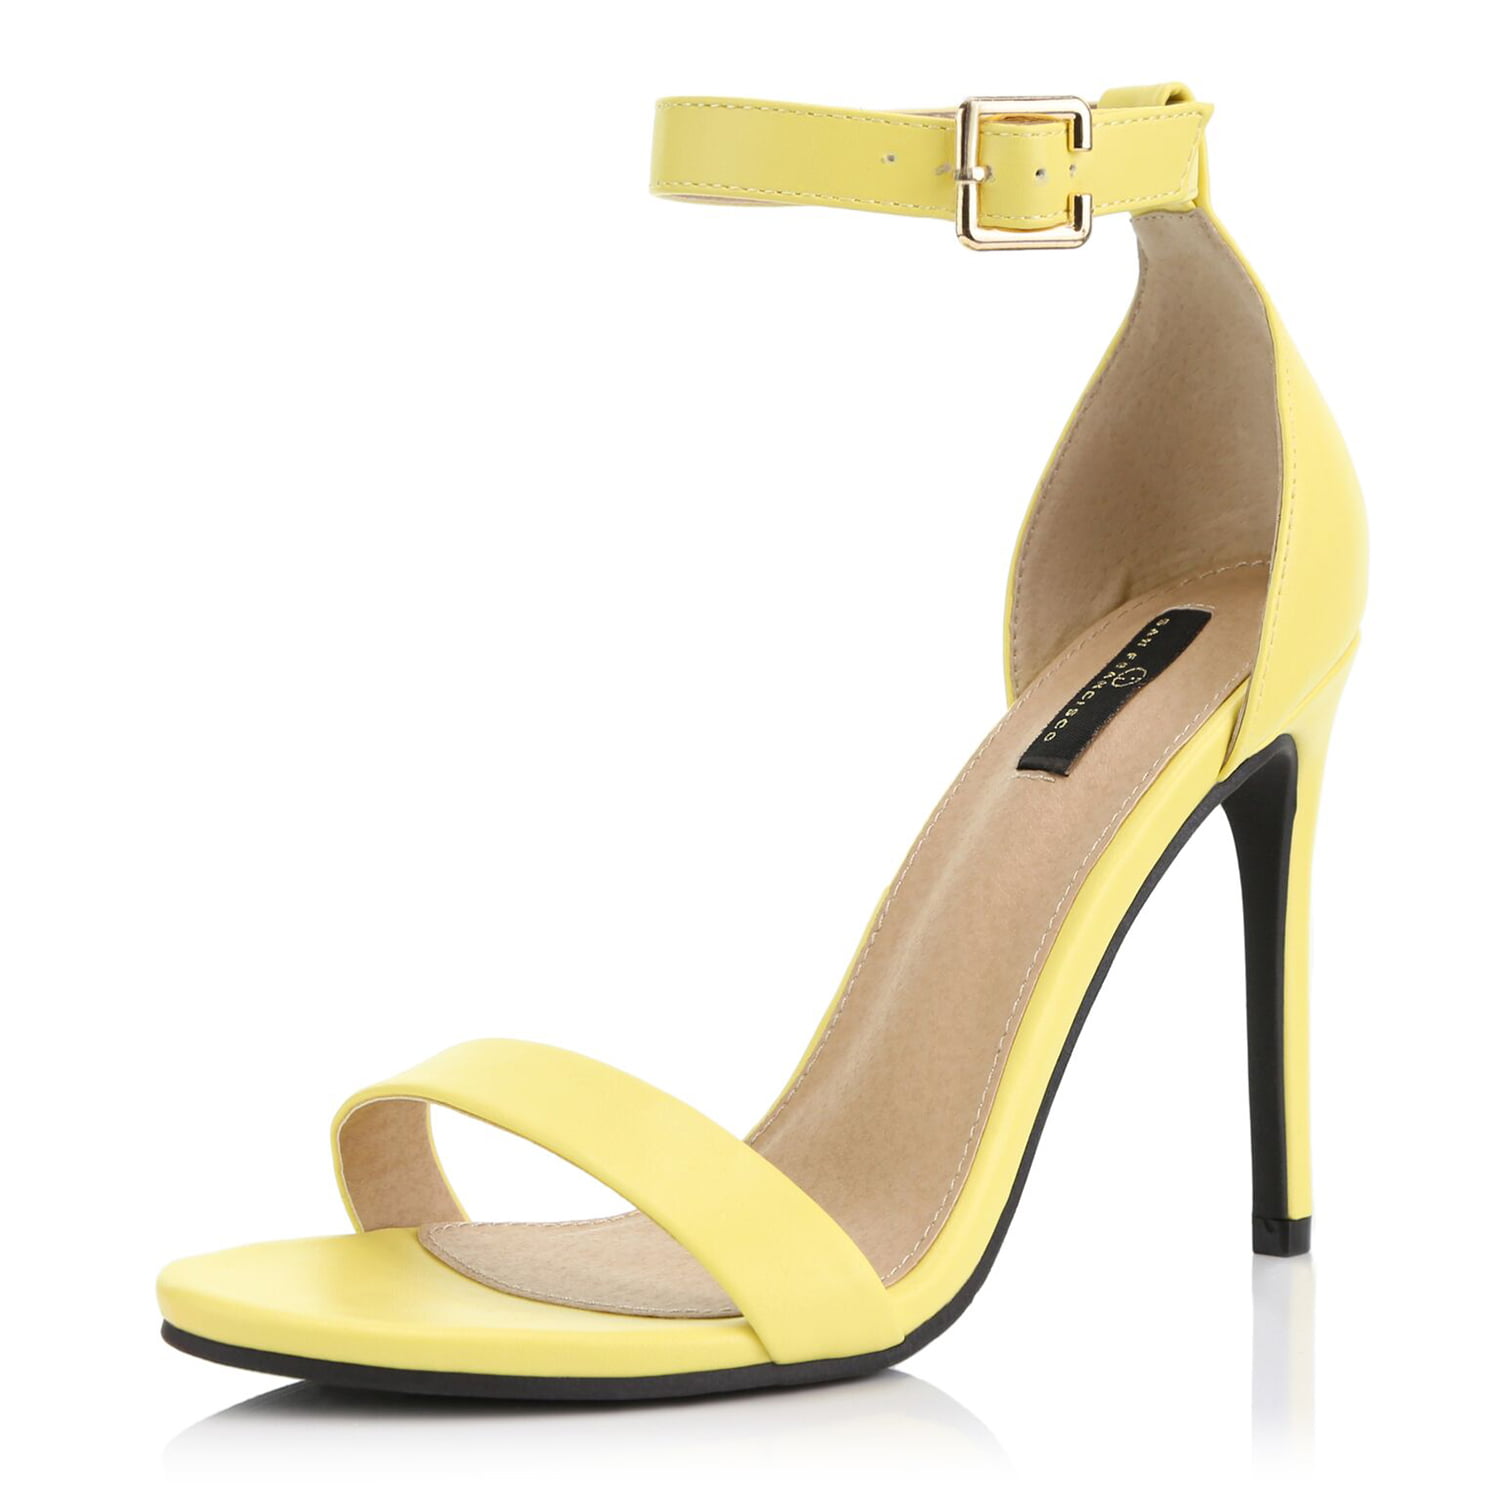 yellow open toe heels